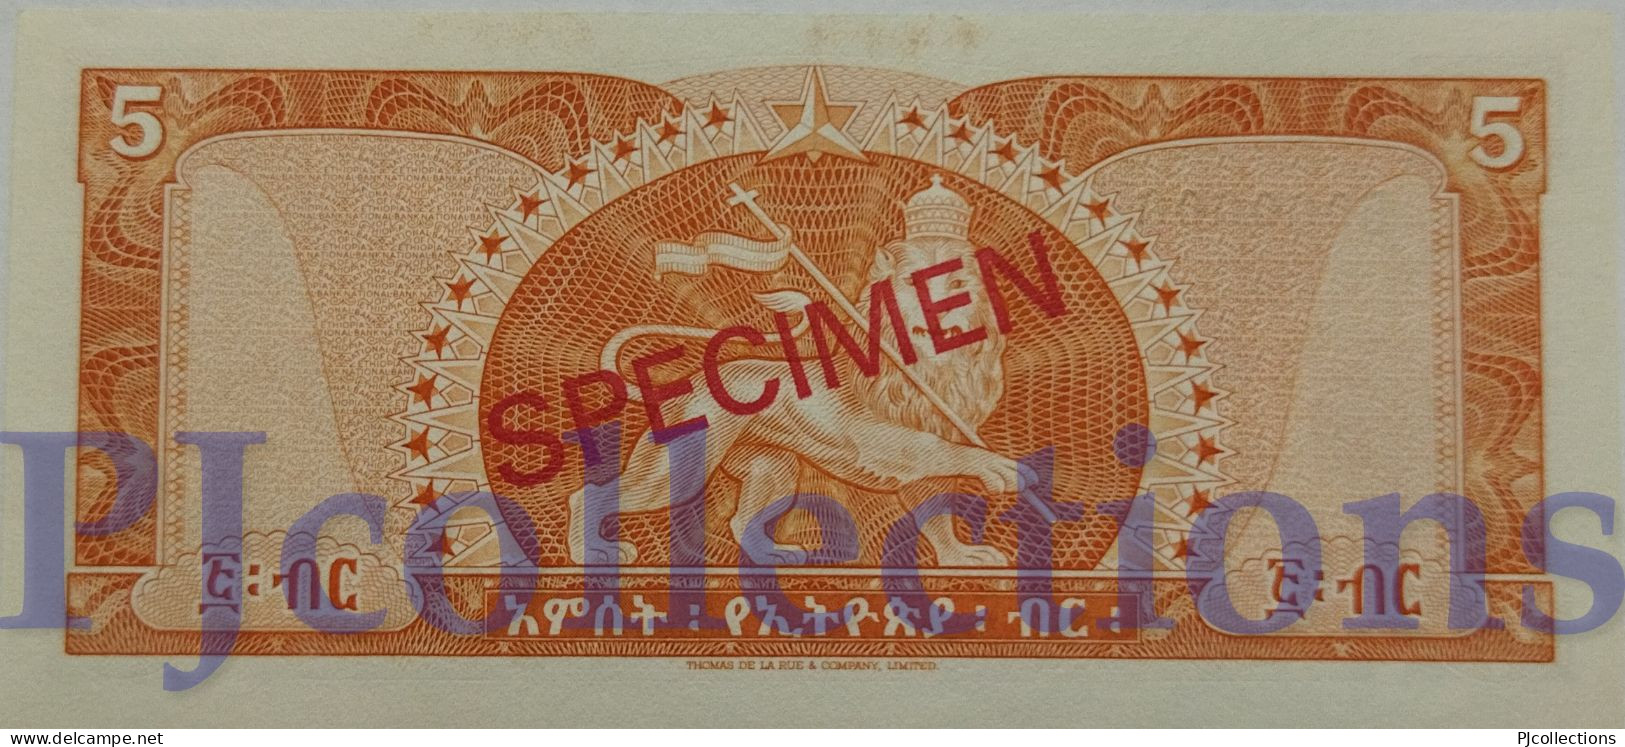 ETHIOPIA 5 DOLLARS 1966 PICK 26s SPECIMEN UNC RARE - Etiopia